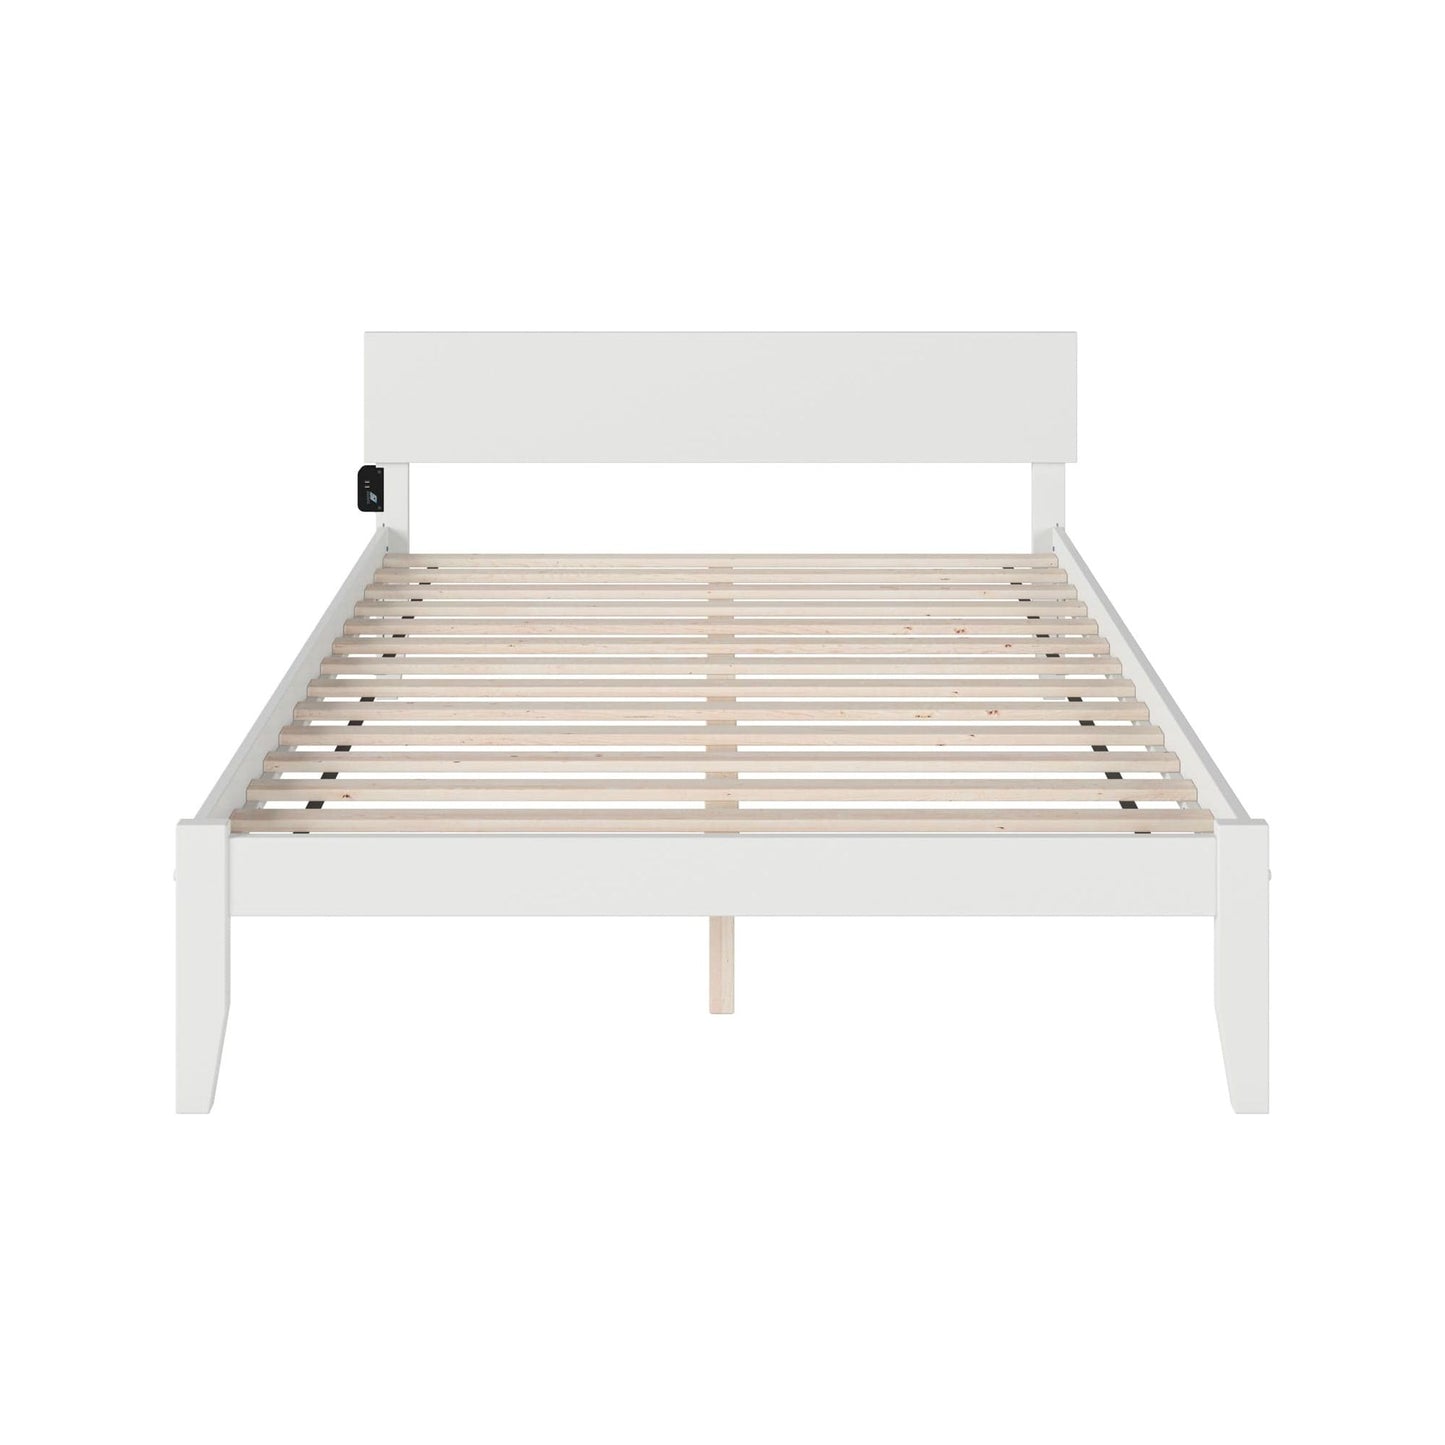 AFI Furnishings Orlando King Platform Bed in White AR8151002